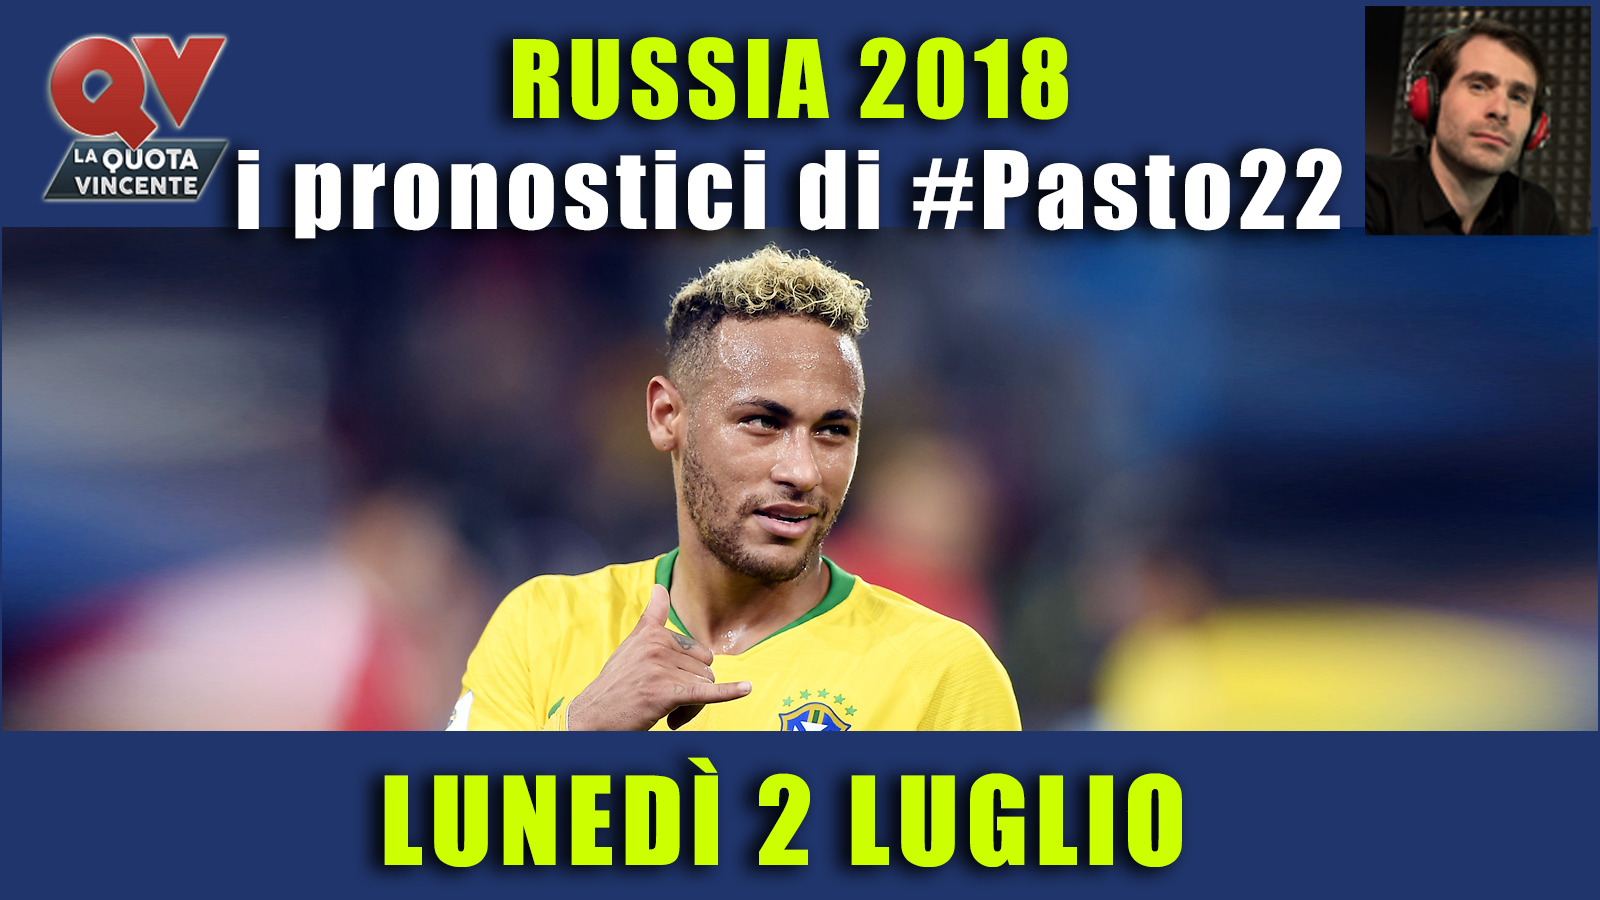 Pronostici Mondiali 2 luglio: le dritte di #Pasto22 a Russia 2018